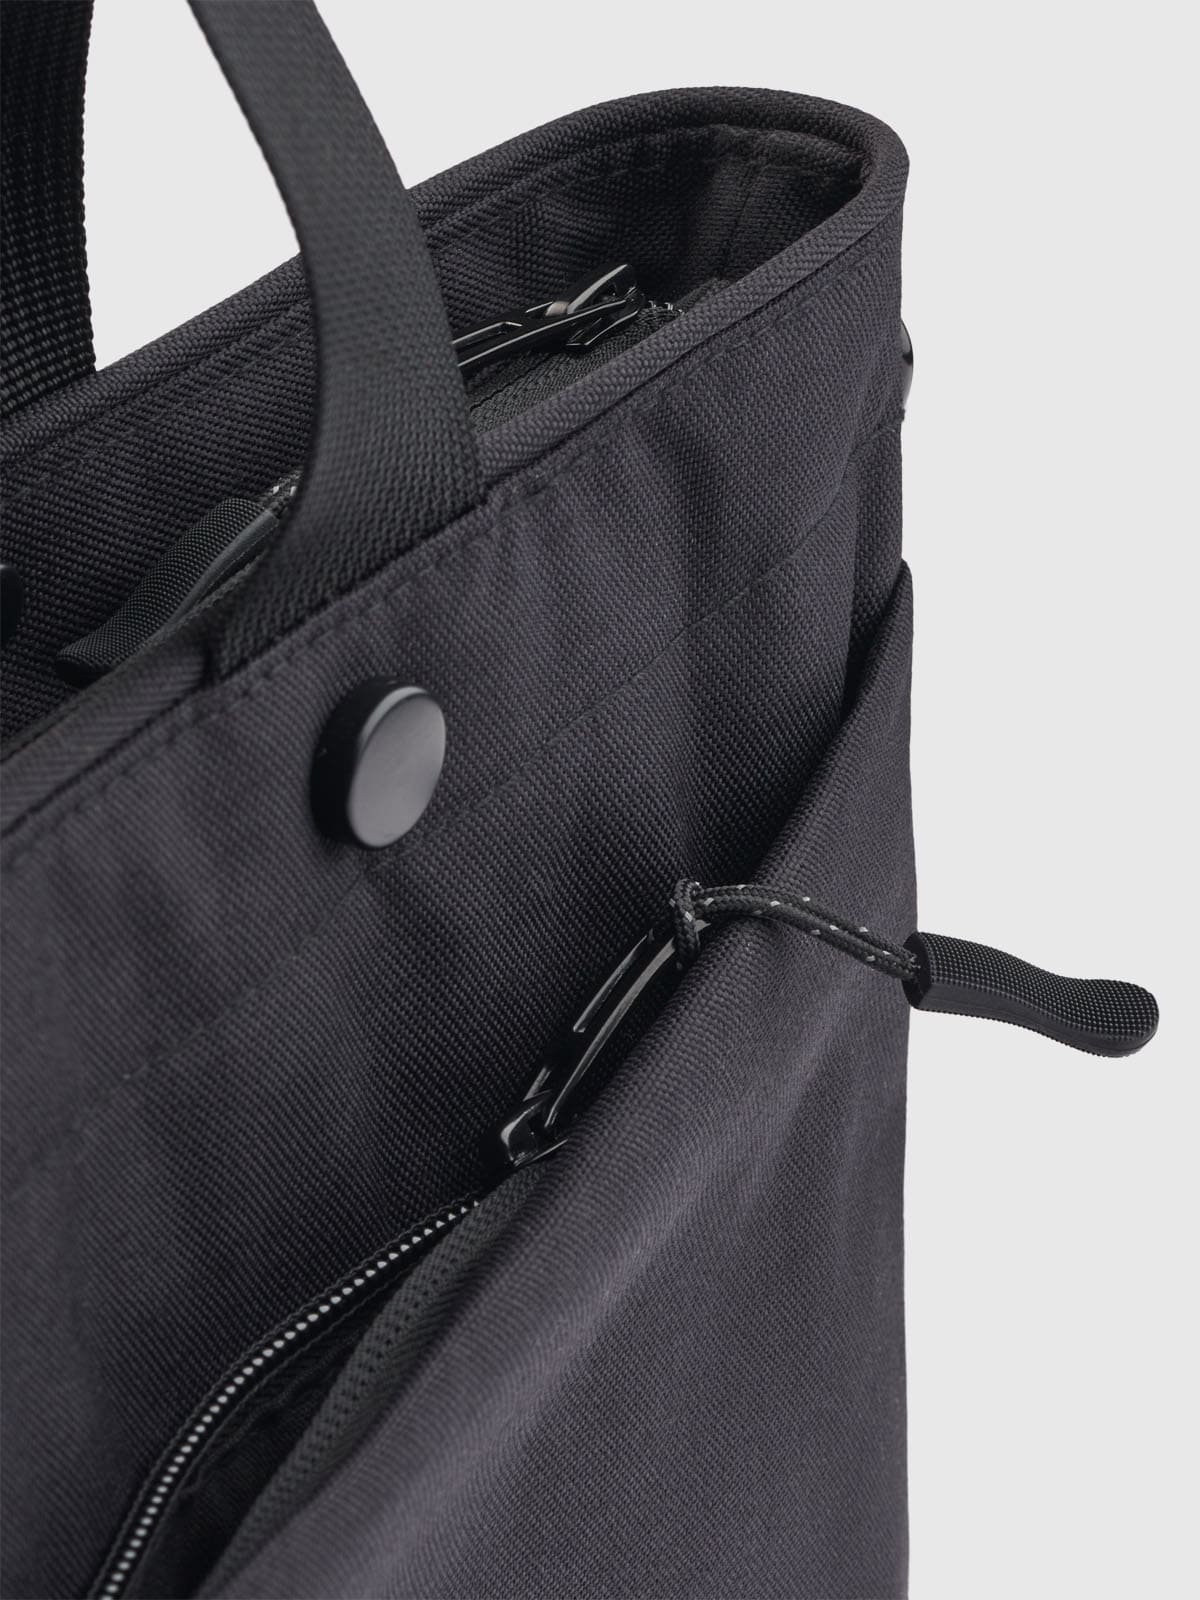 Produktbillede packshot af sort computer taske til mænd fra GABBA